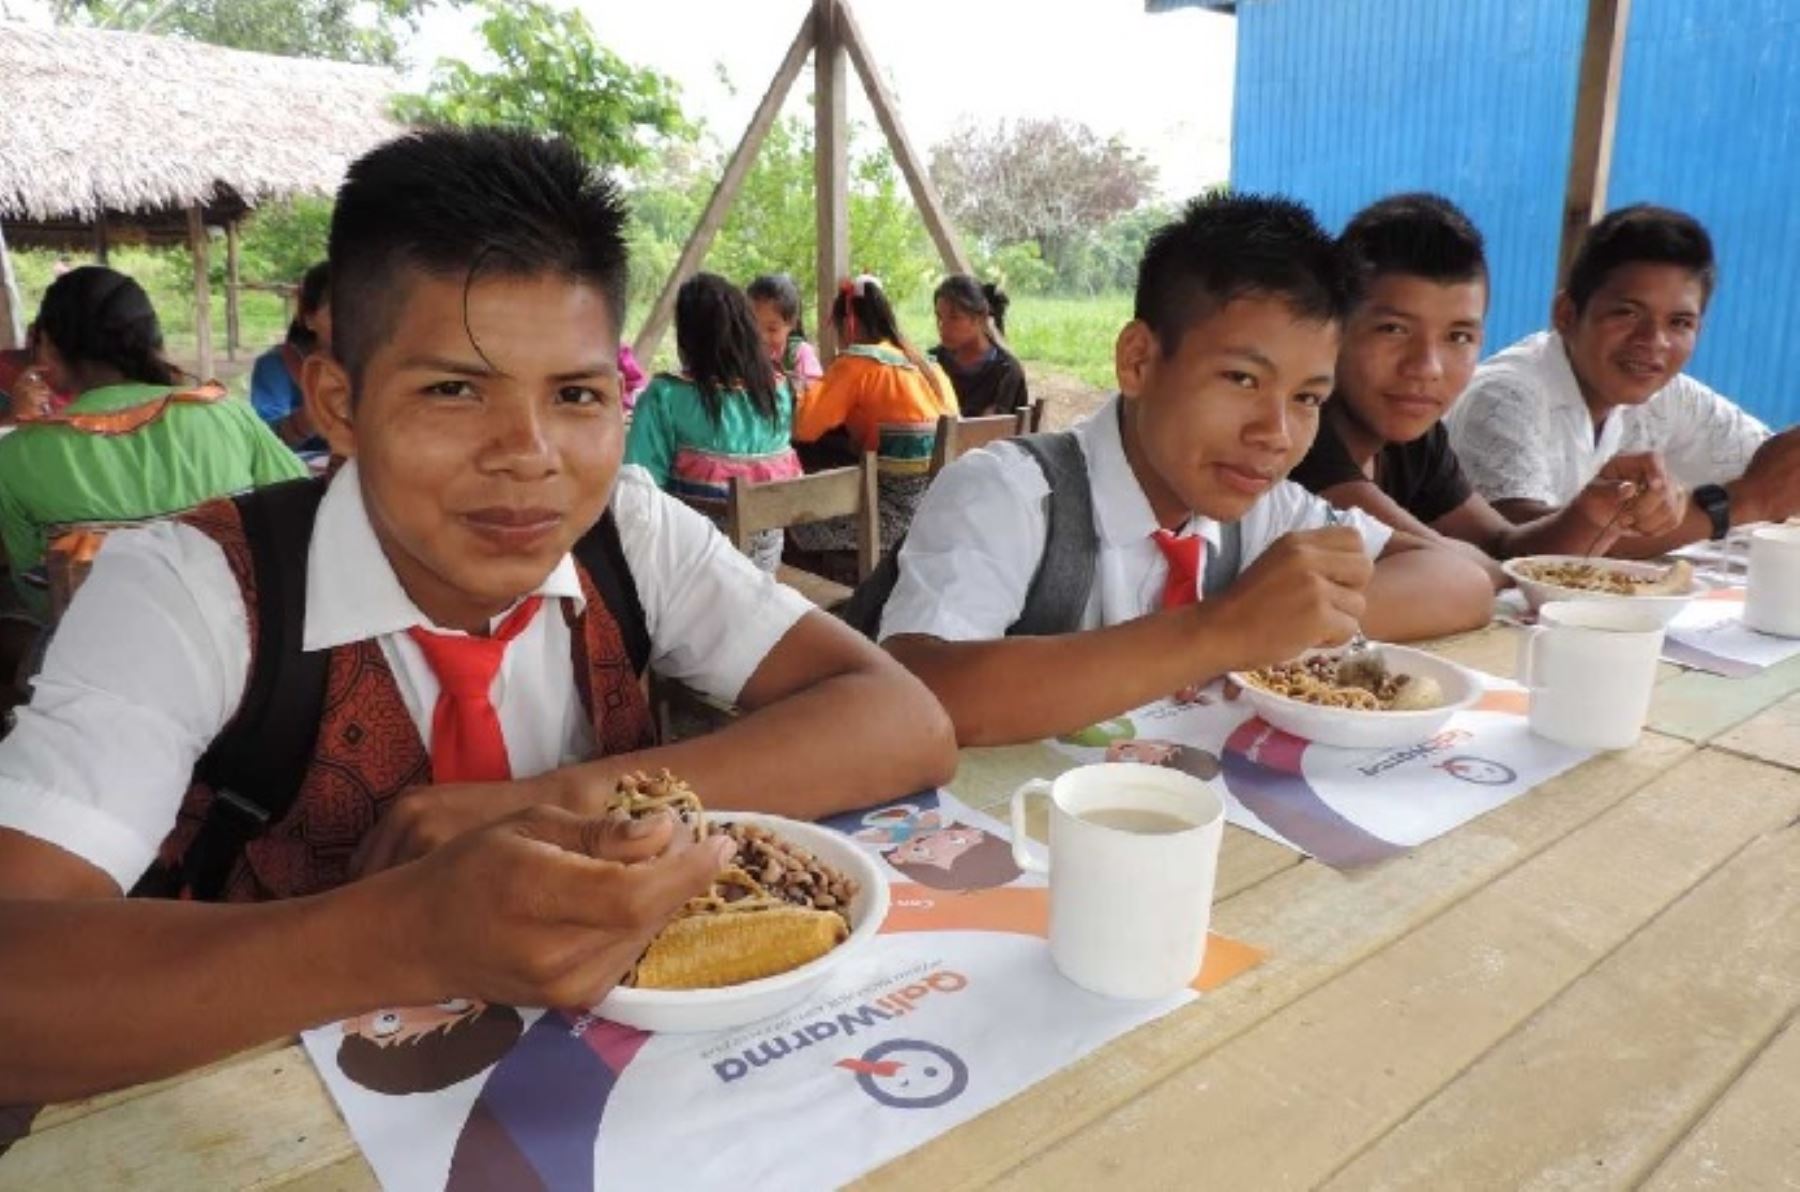 El Ministerio de Desarrollo e Inclusión Social (Midis) generará las condiciones para la alimentación de 11,114 estudiantes de secundaria que viven en los internados de 84 instituciones educativas de nivel secundario, ubicadas en pueblos indígenas de Amazonas y Loreto.